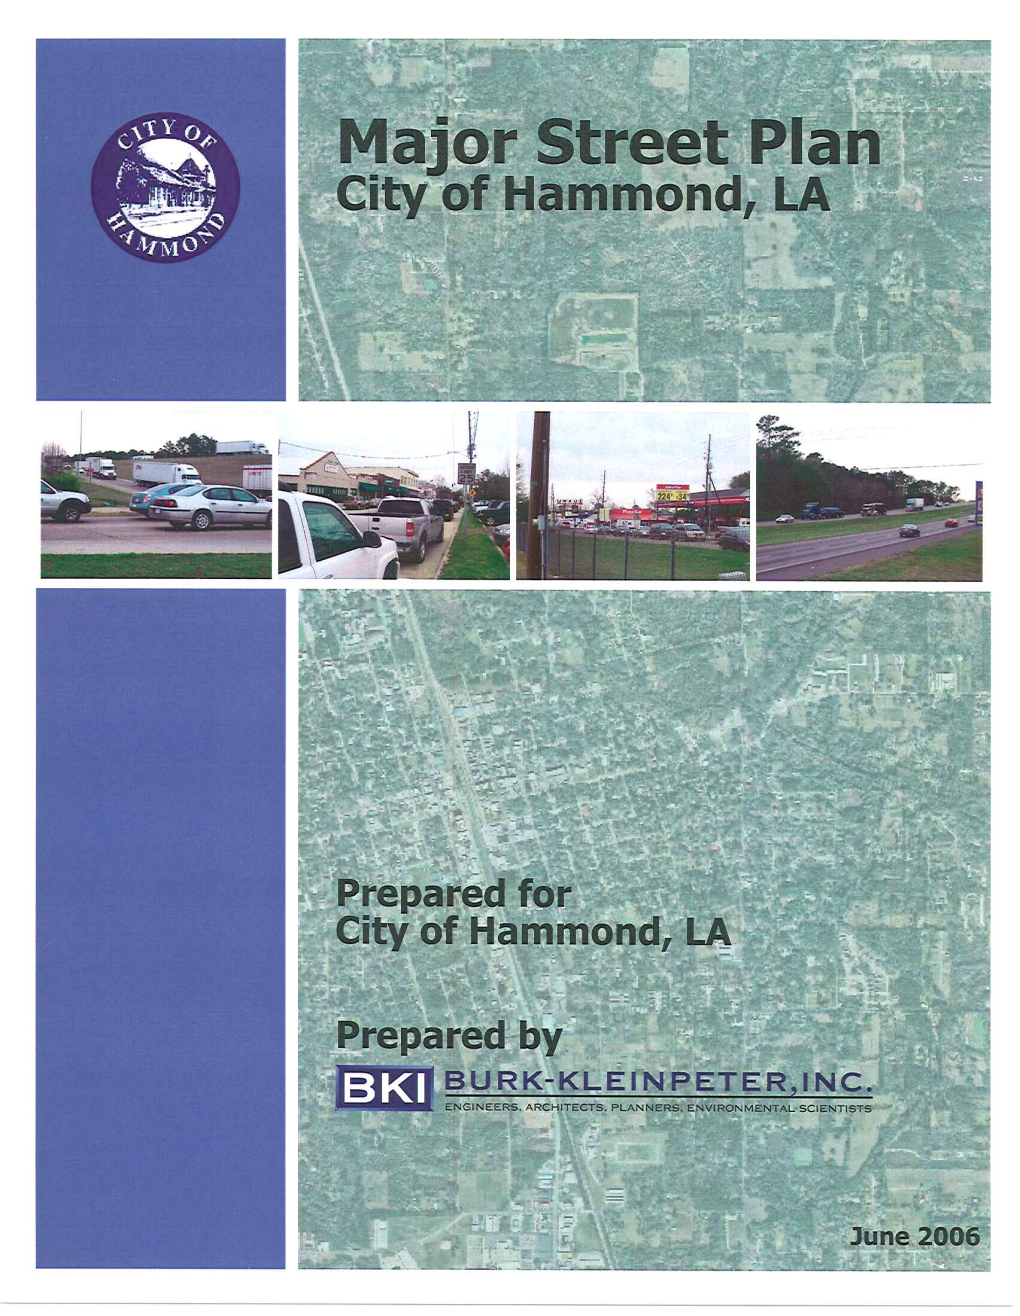 Major Street Plan City of Hammond, Louisiana